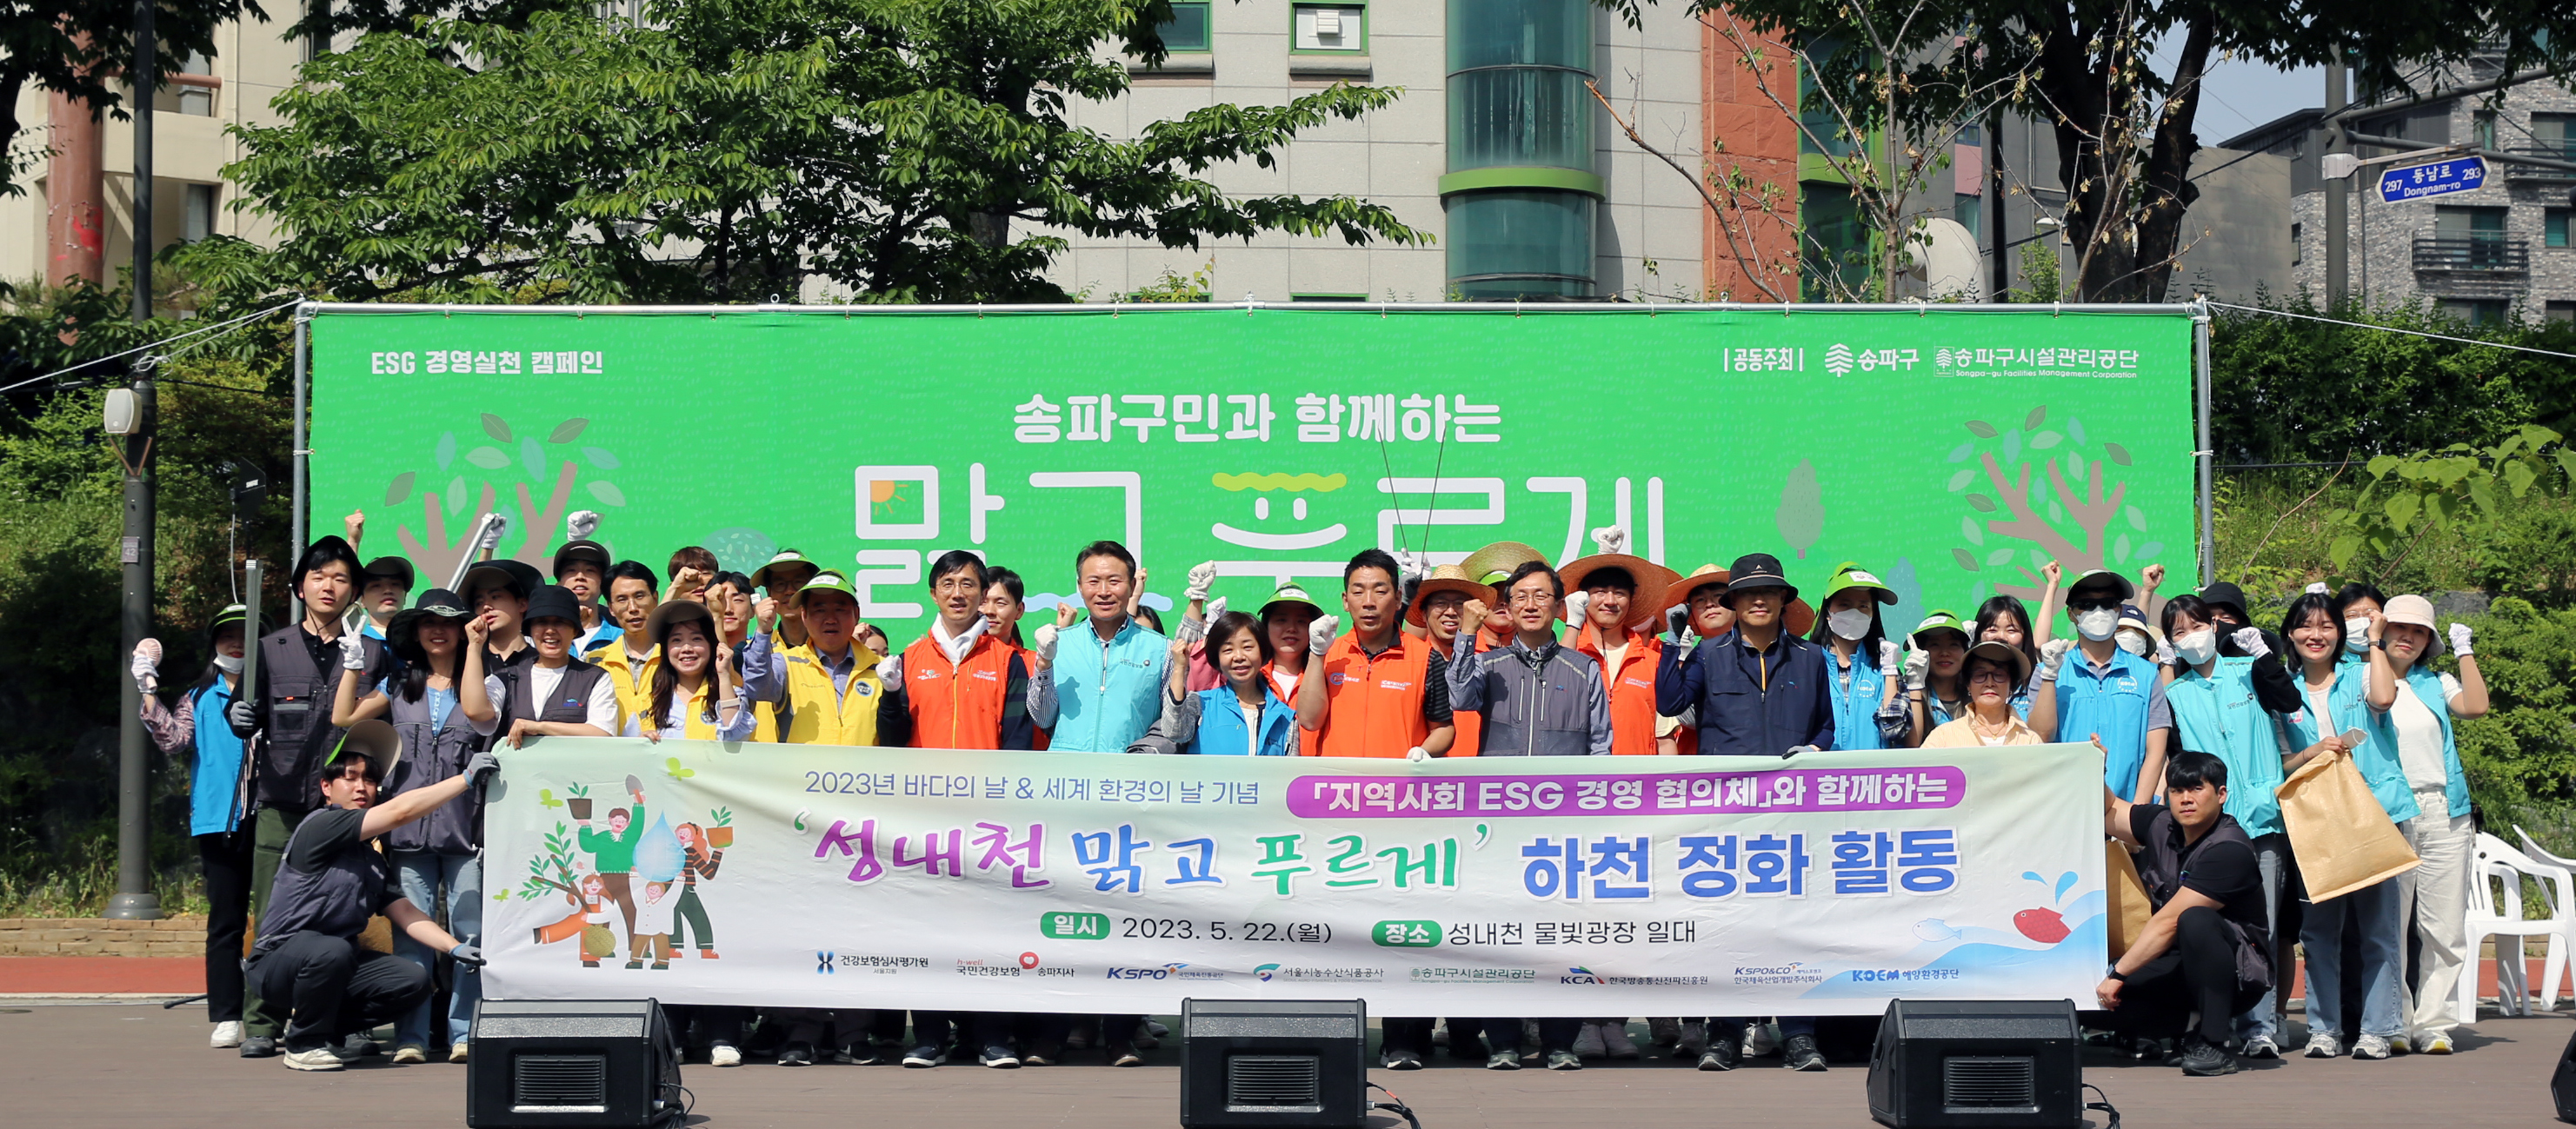 KCA, 지역사회 ESG 경영협의체와 도심하천 정화 활동, 수자원 보호 앞장서다